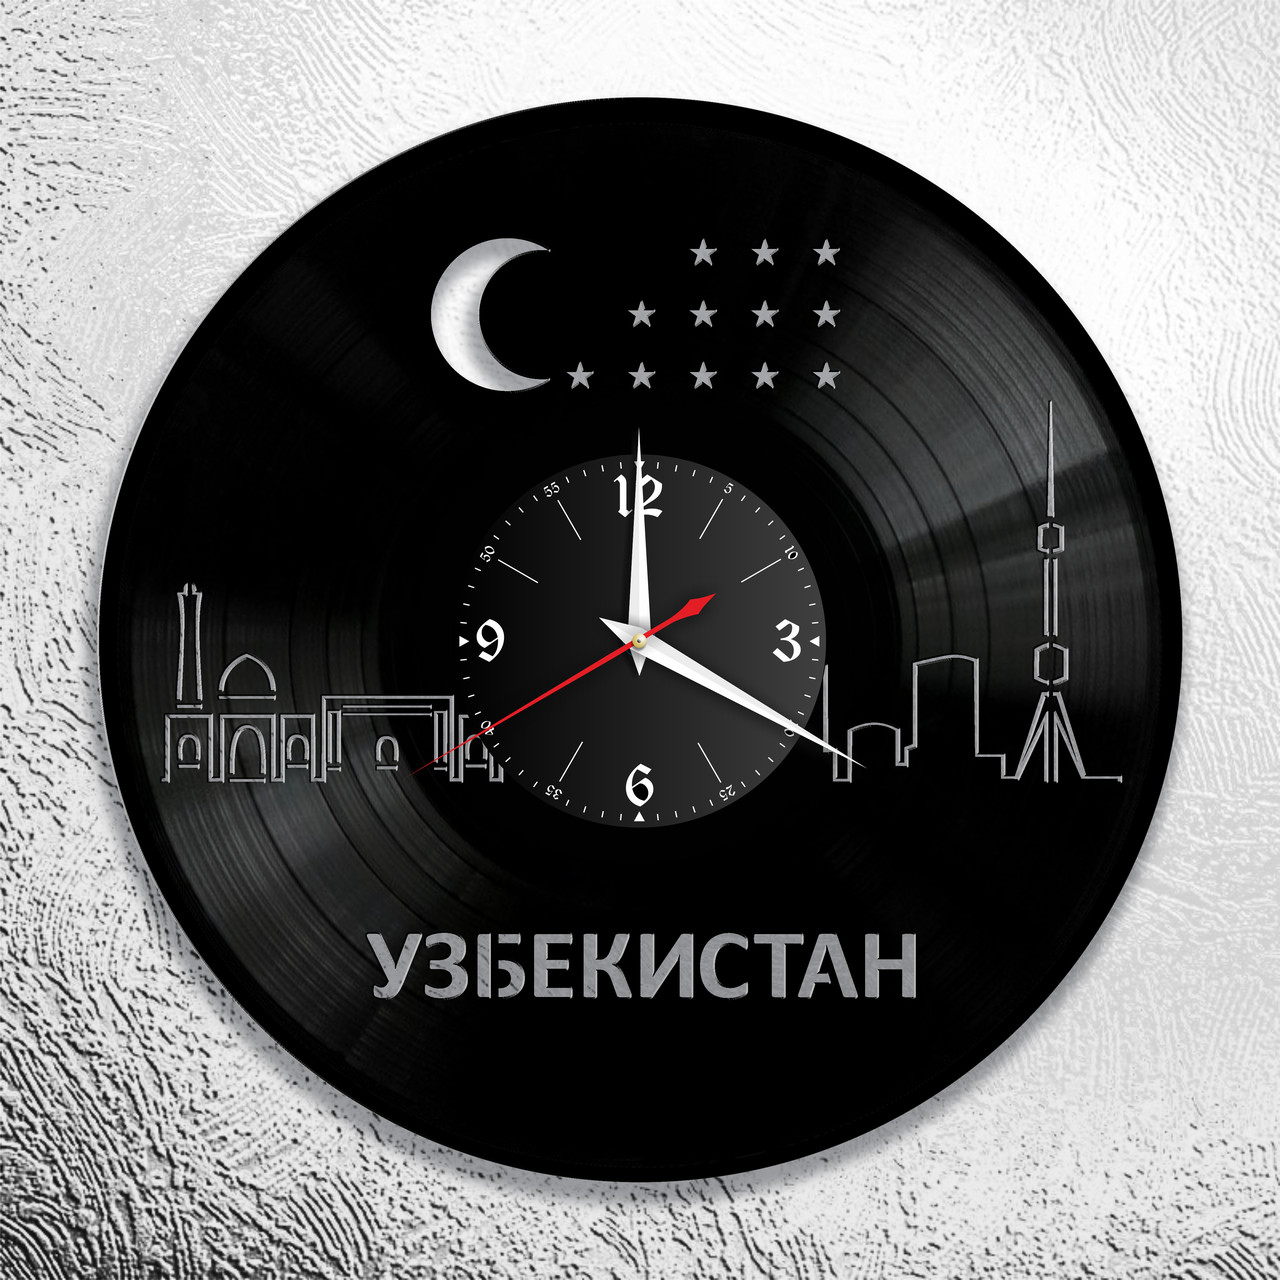 Часы из виниловой пластинки  "Узбекистан" версия 2, фото 1